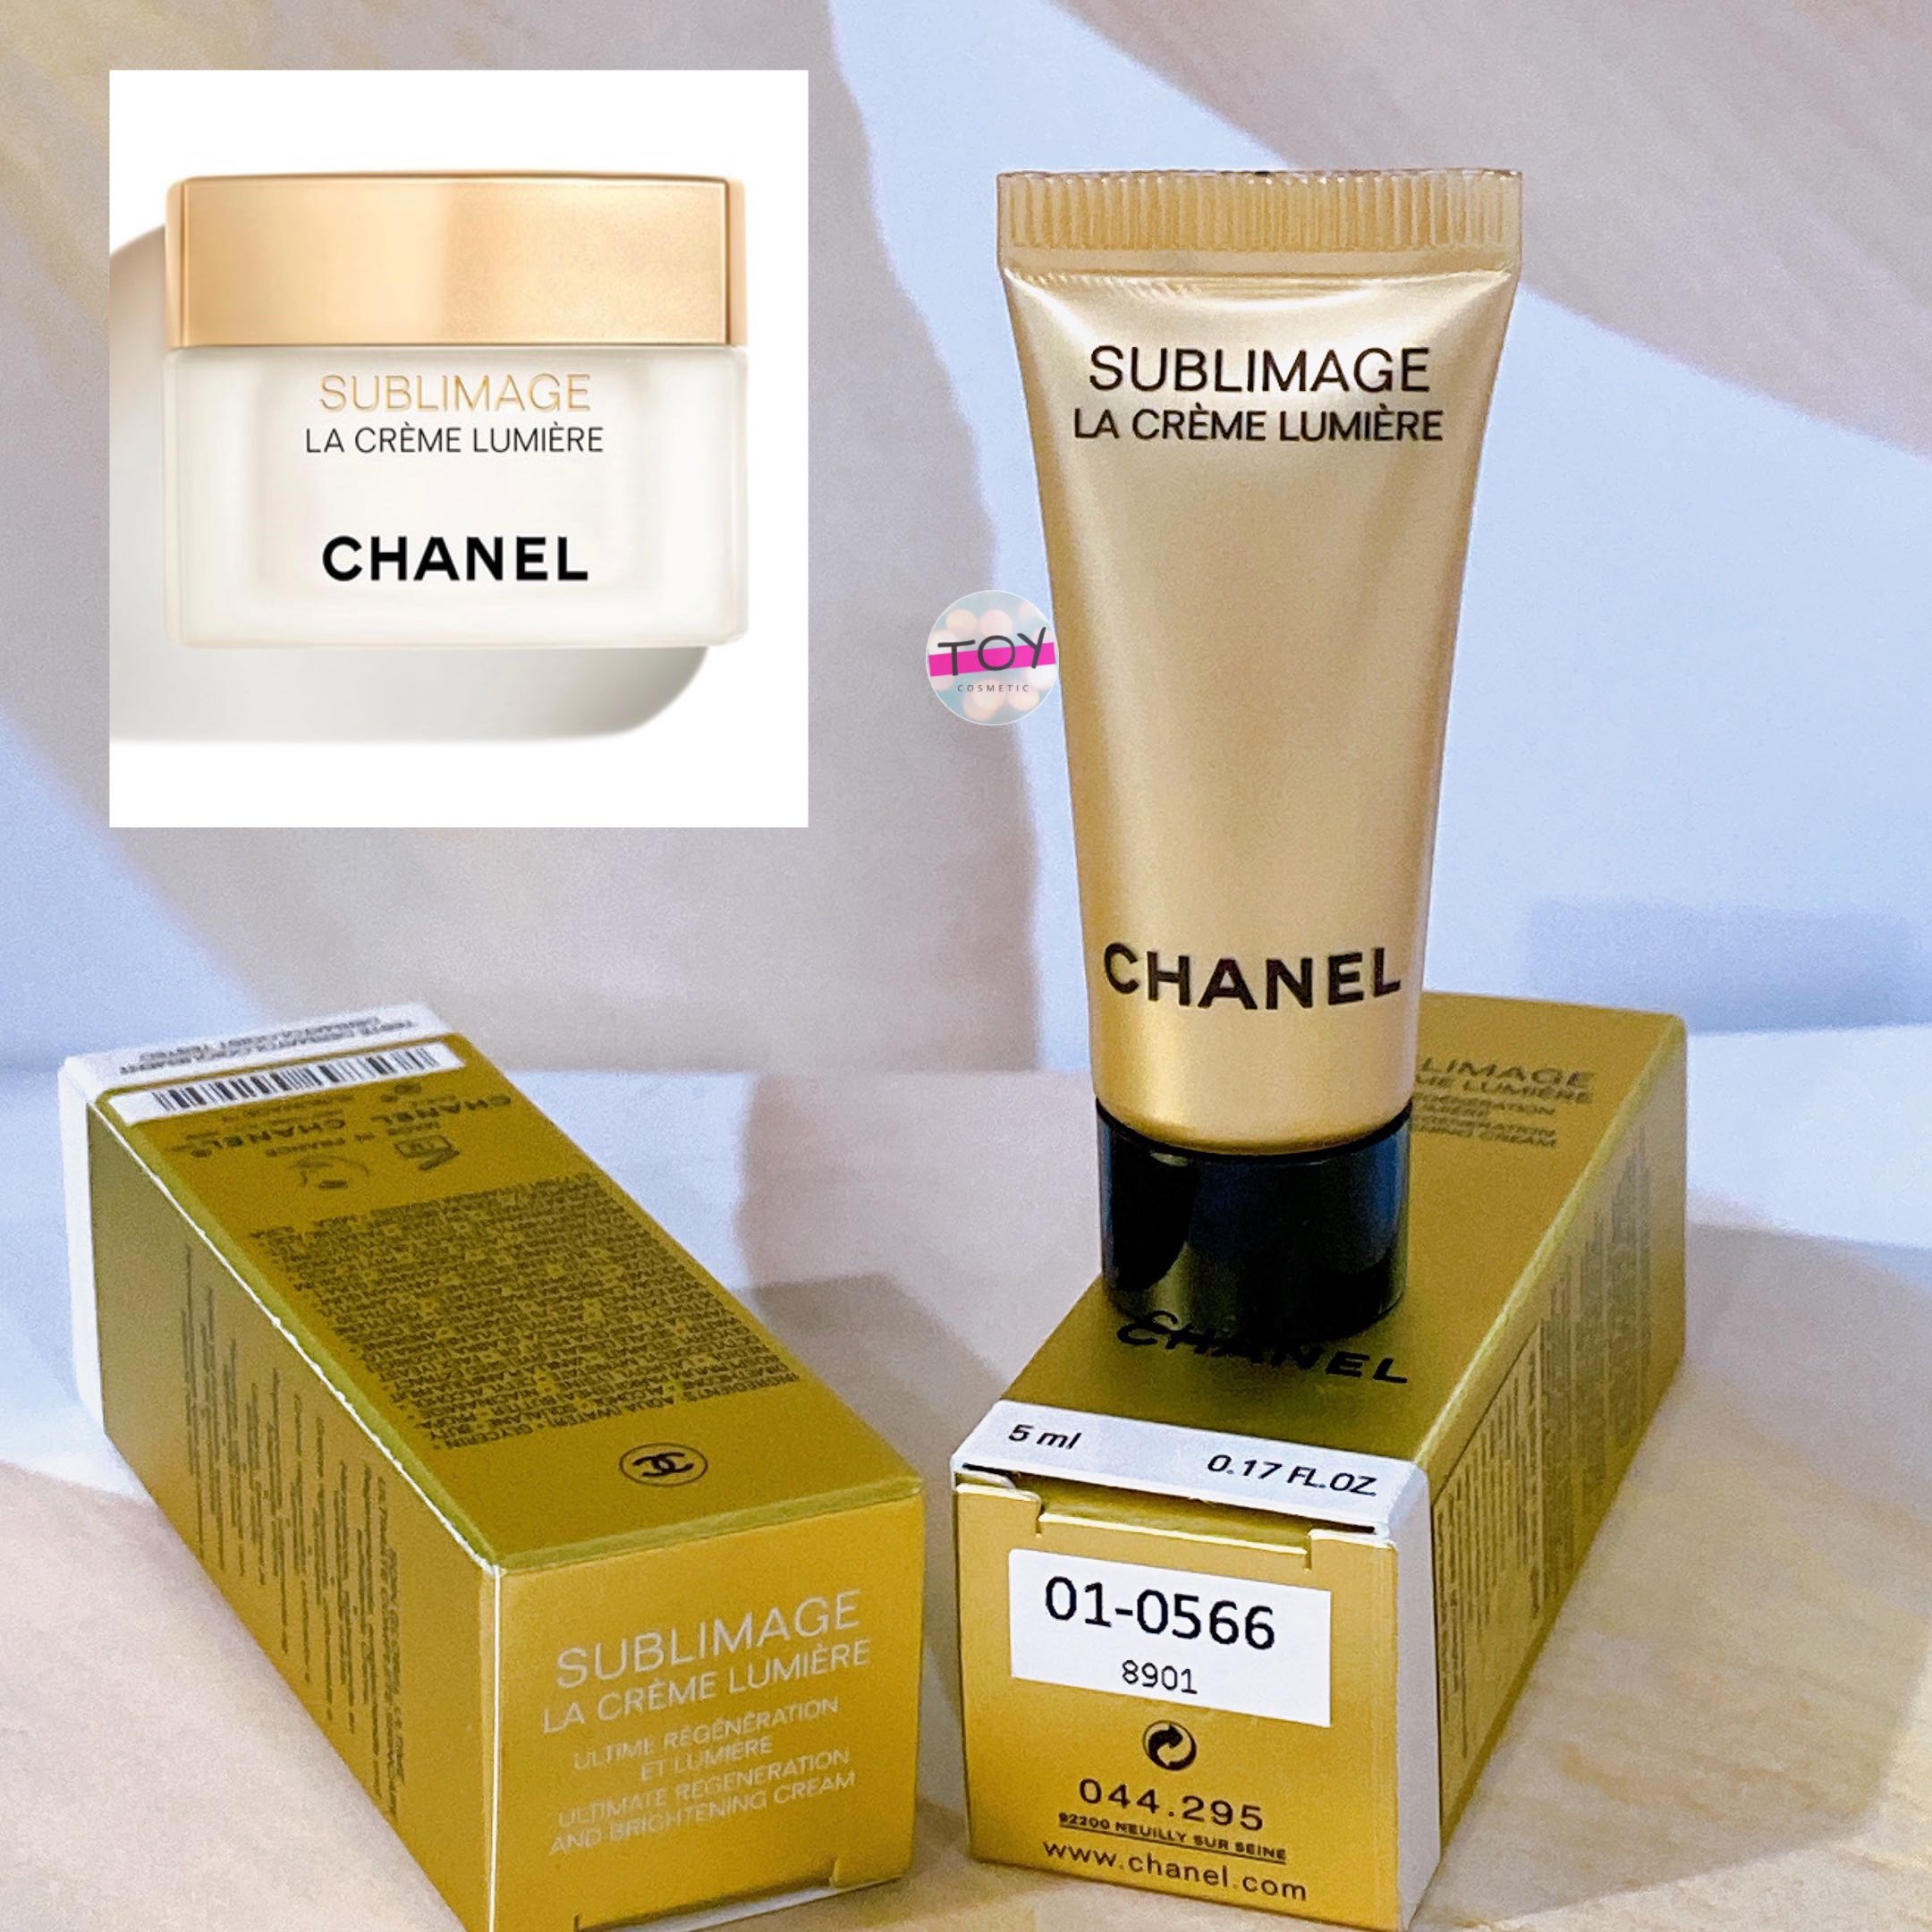 Chanel Sublimage La Creme Lumiere 5 ml.